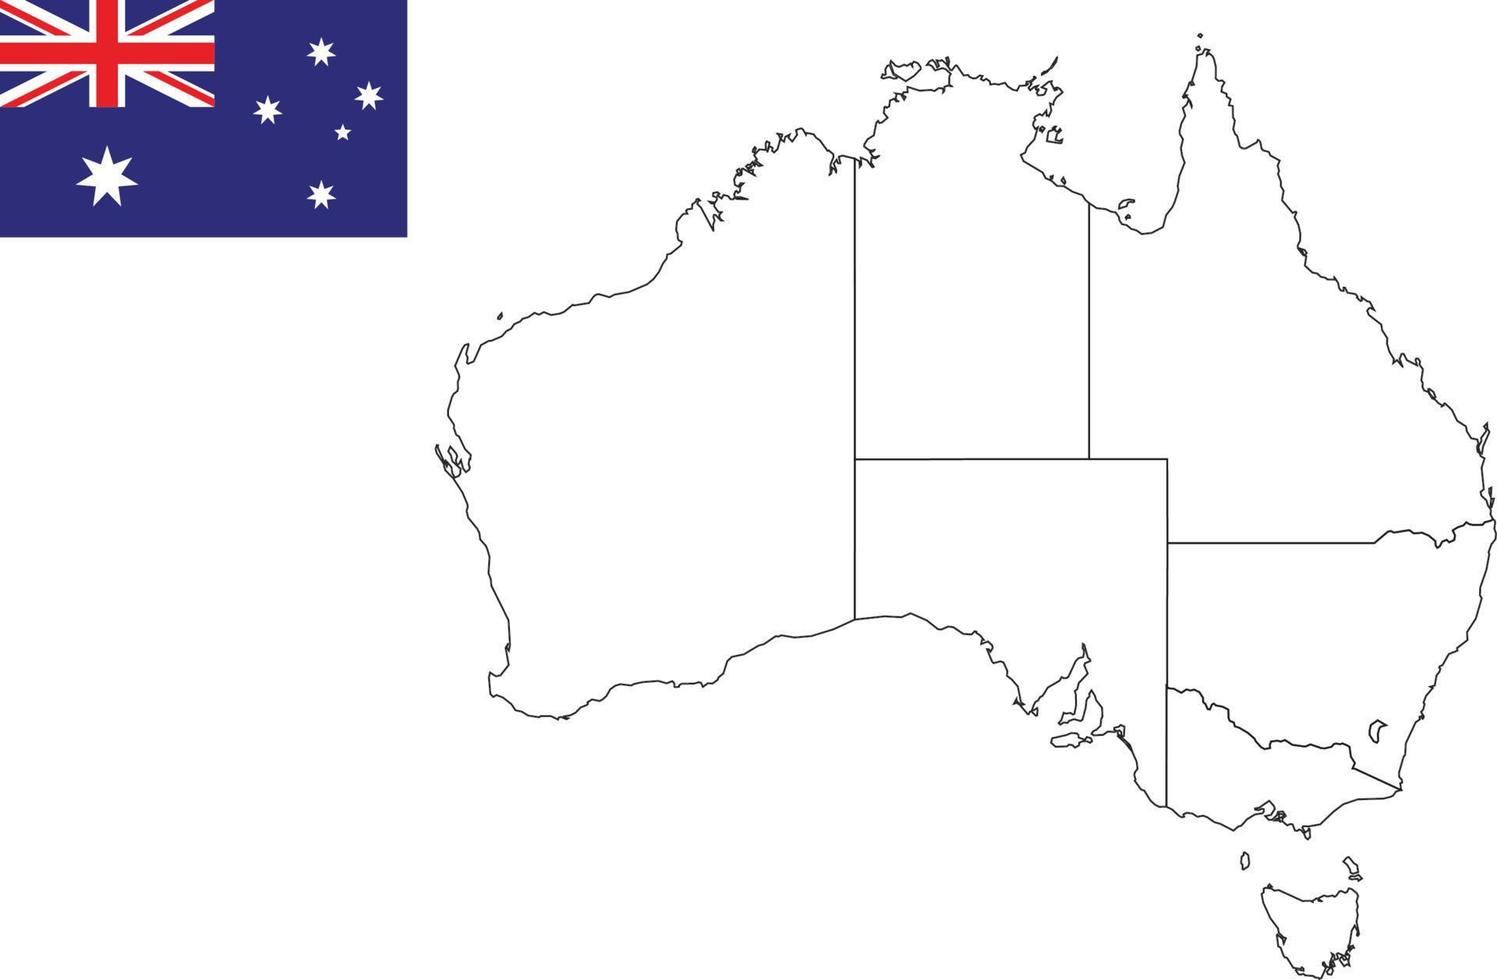 Karte und Flagge von Australien vektor